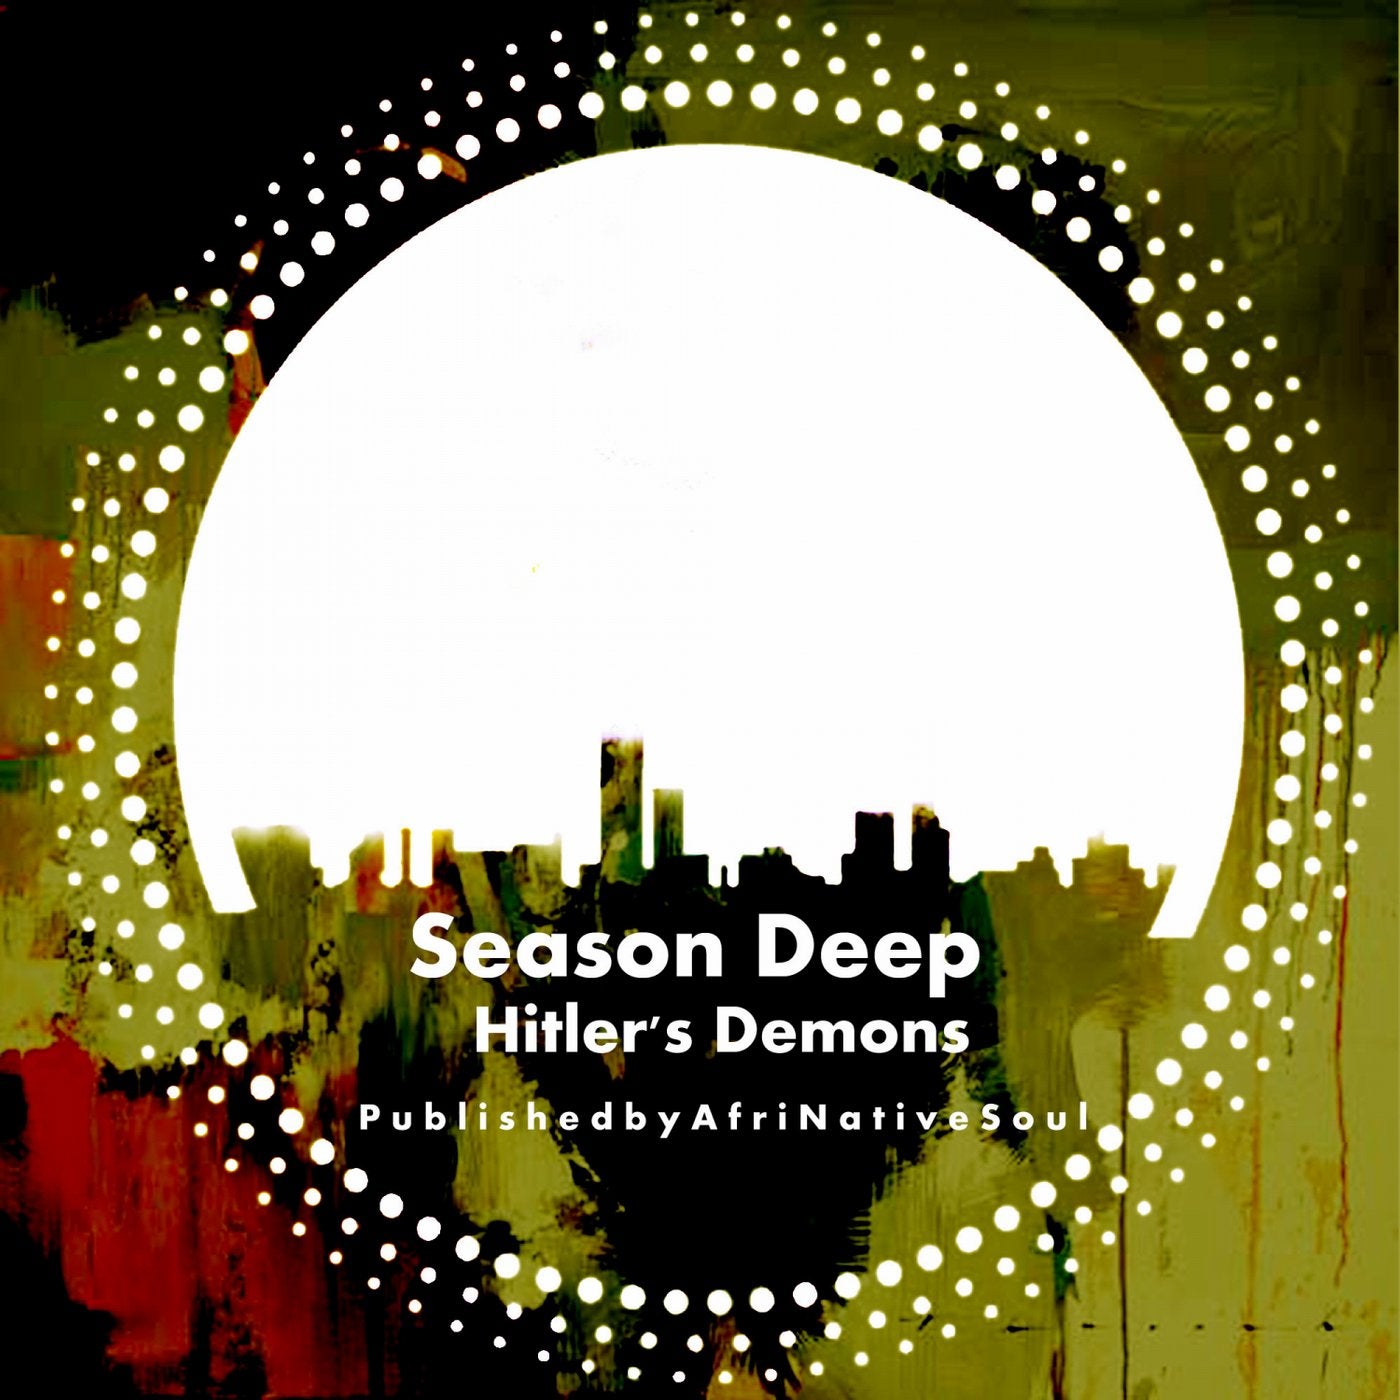 Hitler's Demons